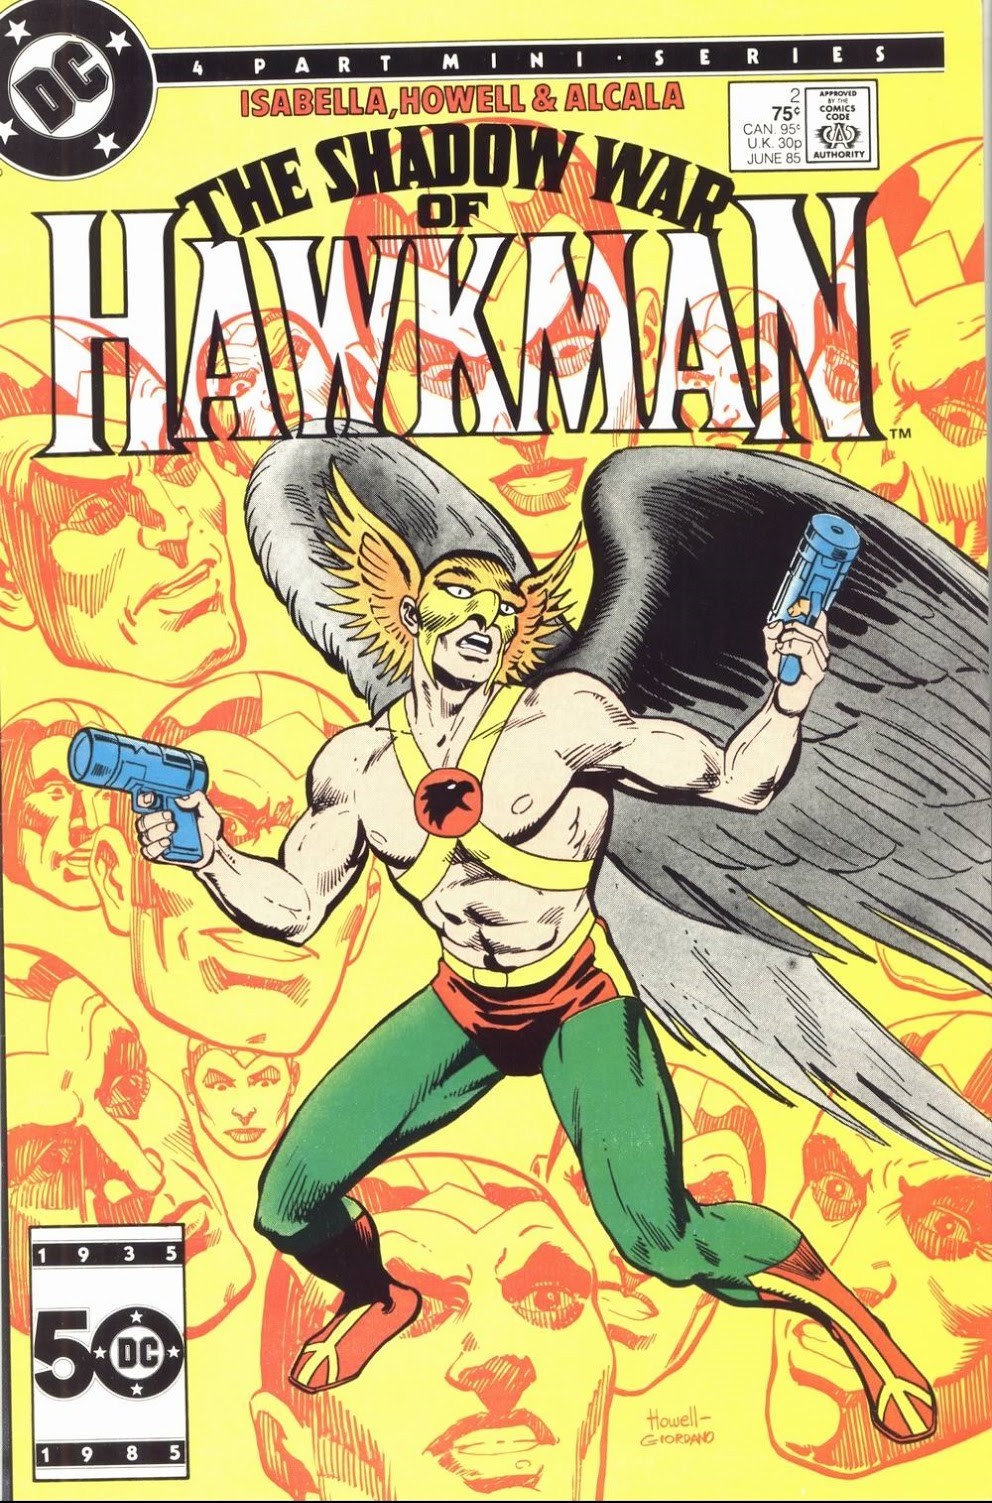 The Shadow War of Hawkman Art